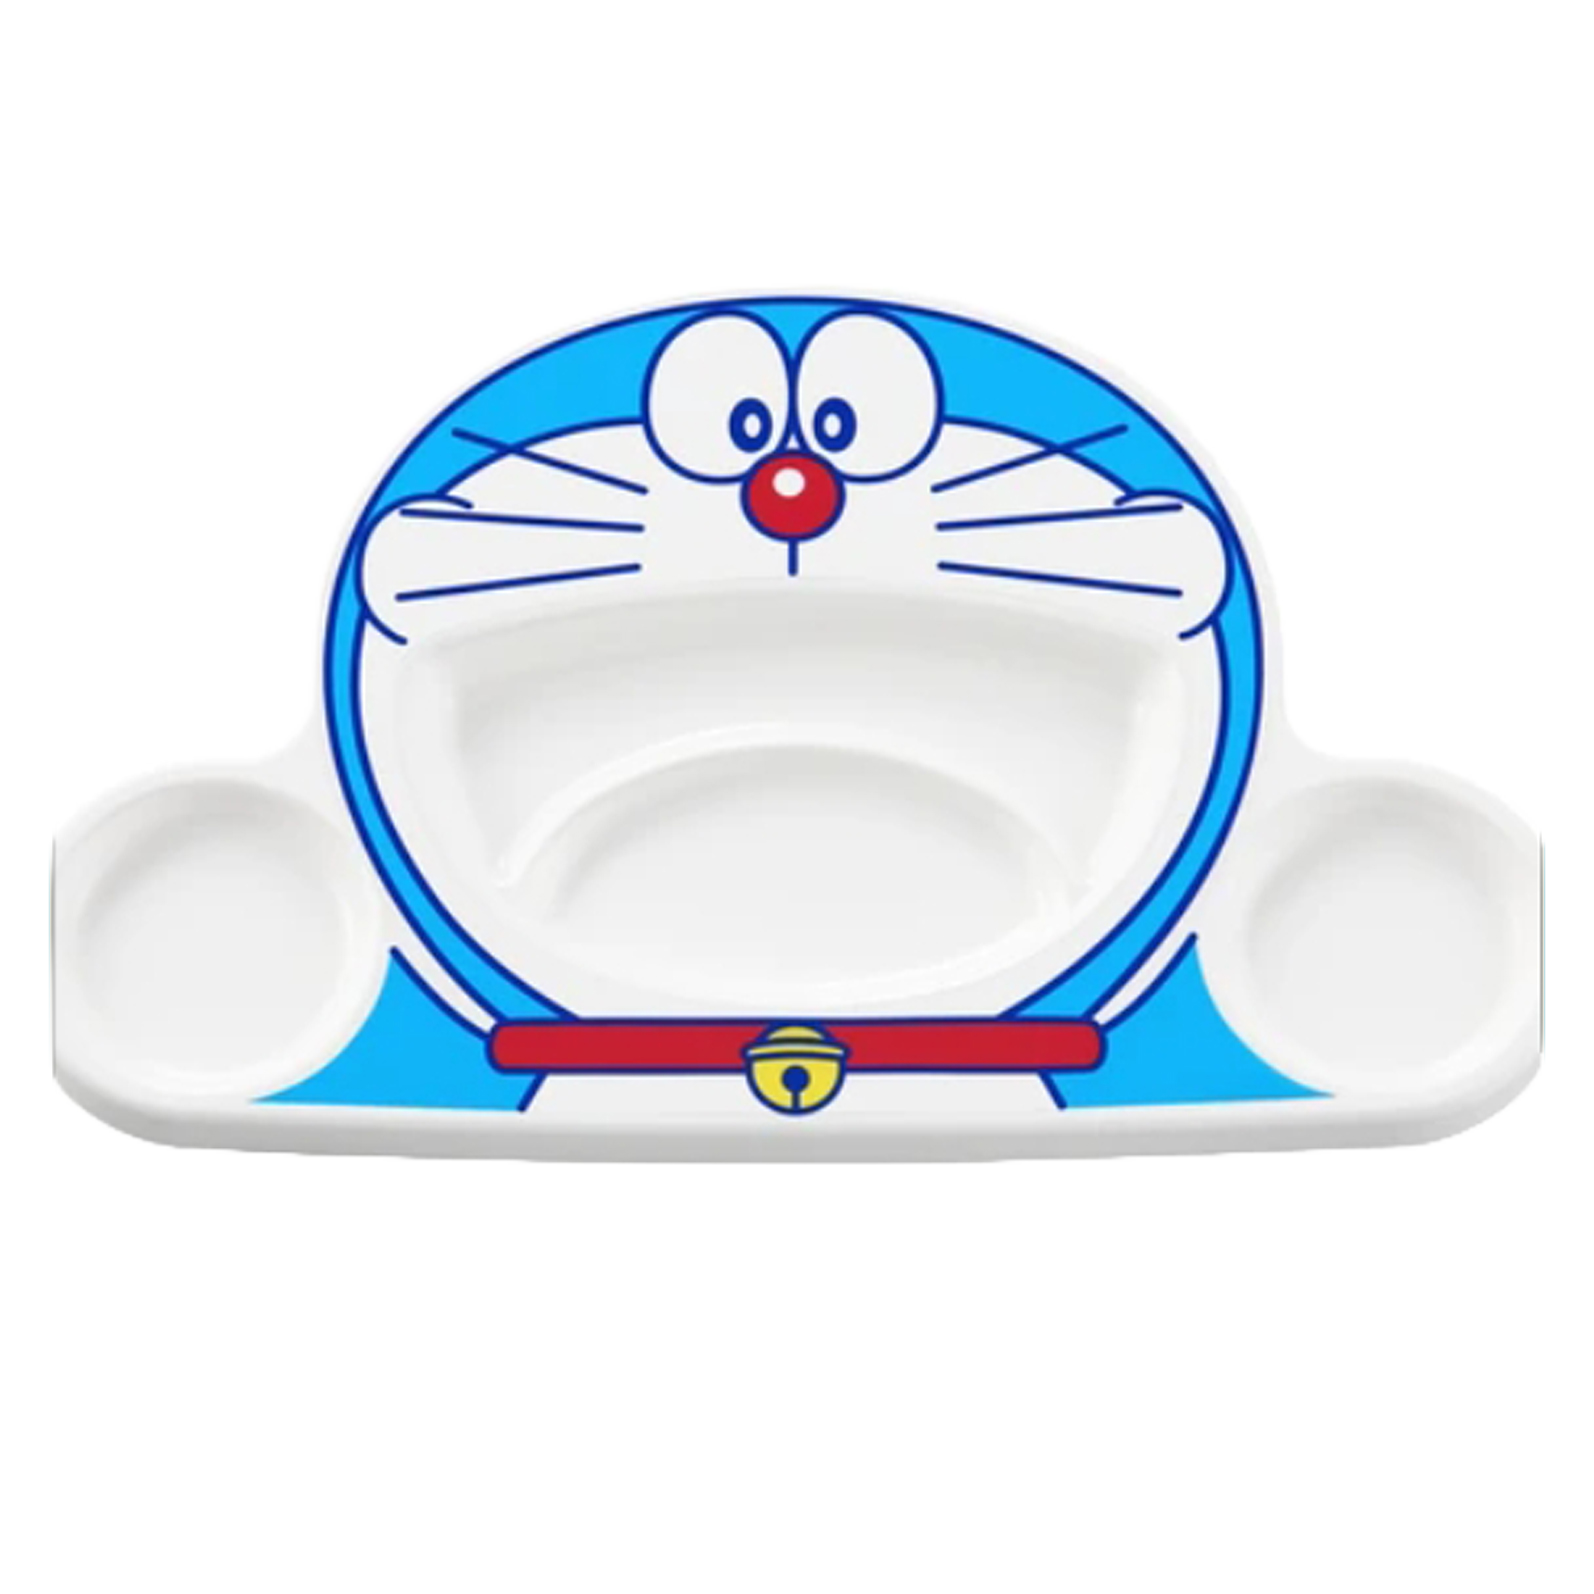 日本製 哆啦A夢 Doraemon 餐盤 午餐盤 現貨 日本直運